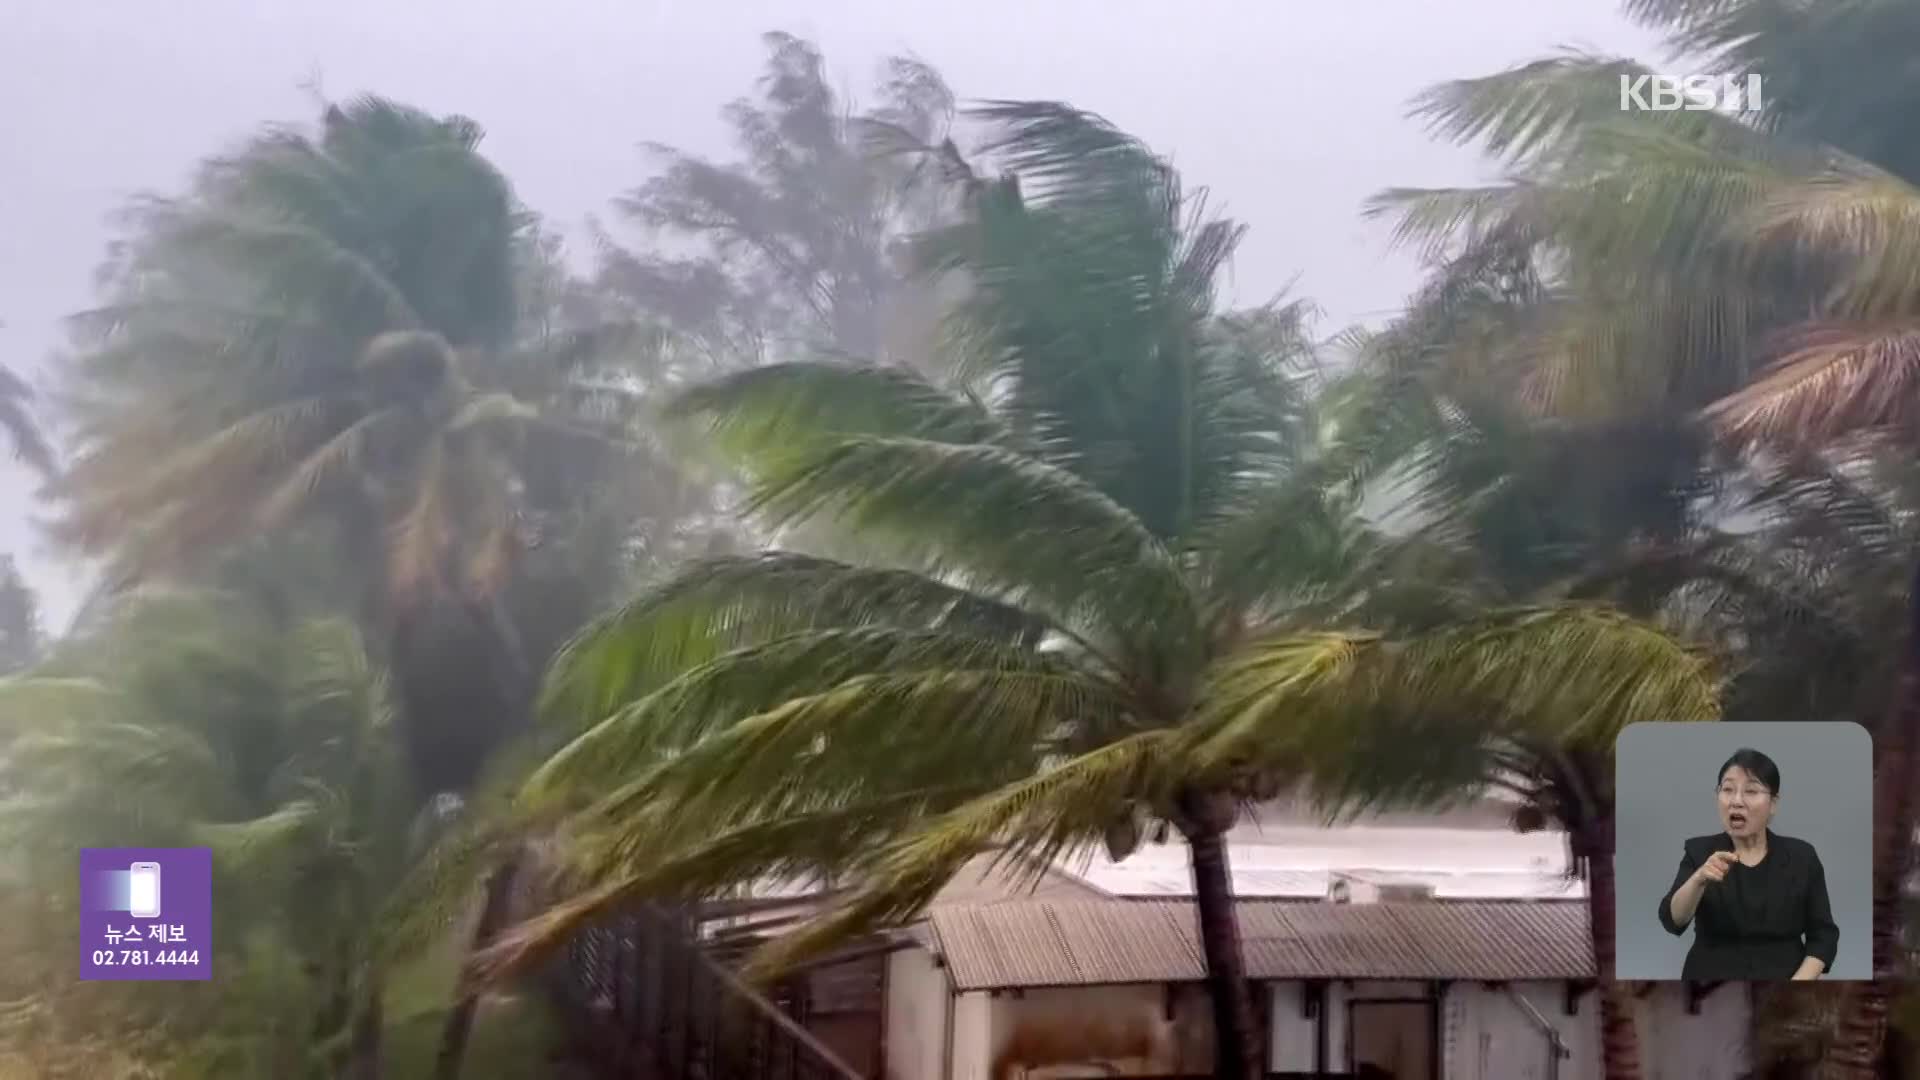 ‘슈퍼 태풍’ 마와르 괌 접근…한국인 관광객도 발 묶여